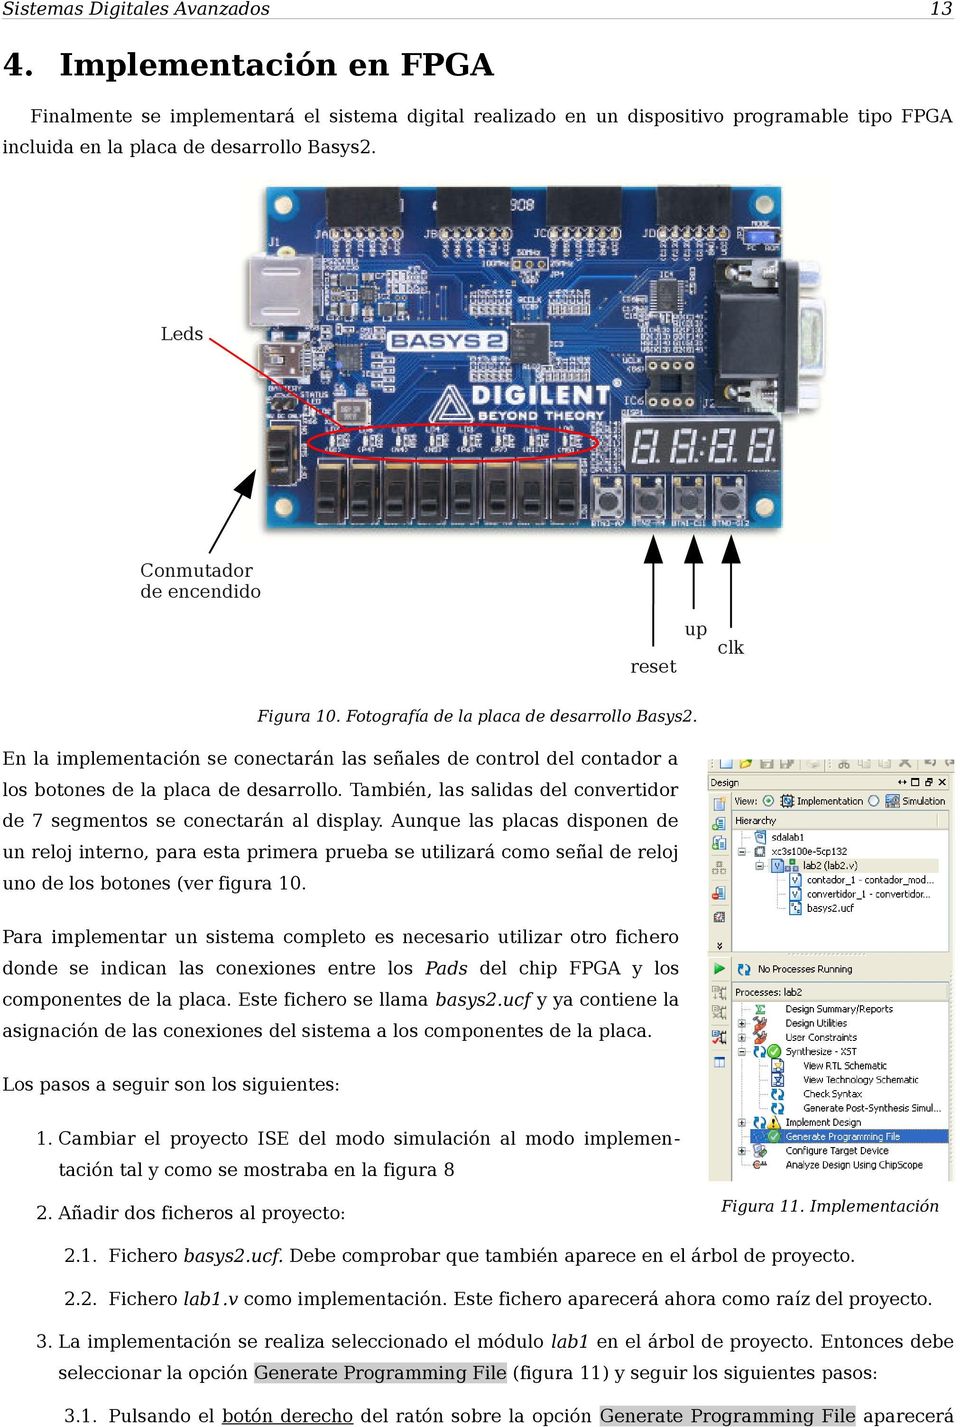 En la implementación se conectarán las señales de control del contador a los botones de la placa de desarrollo. También, las salidas del convertidor de 7 segmentos se conectarán al display.